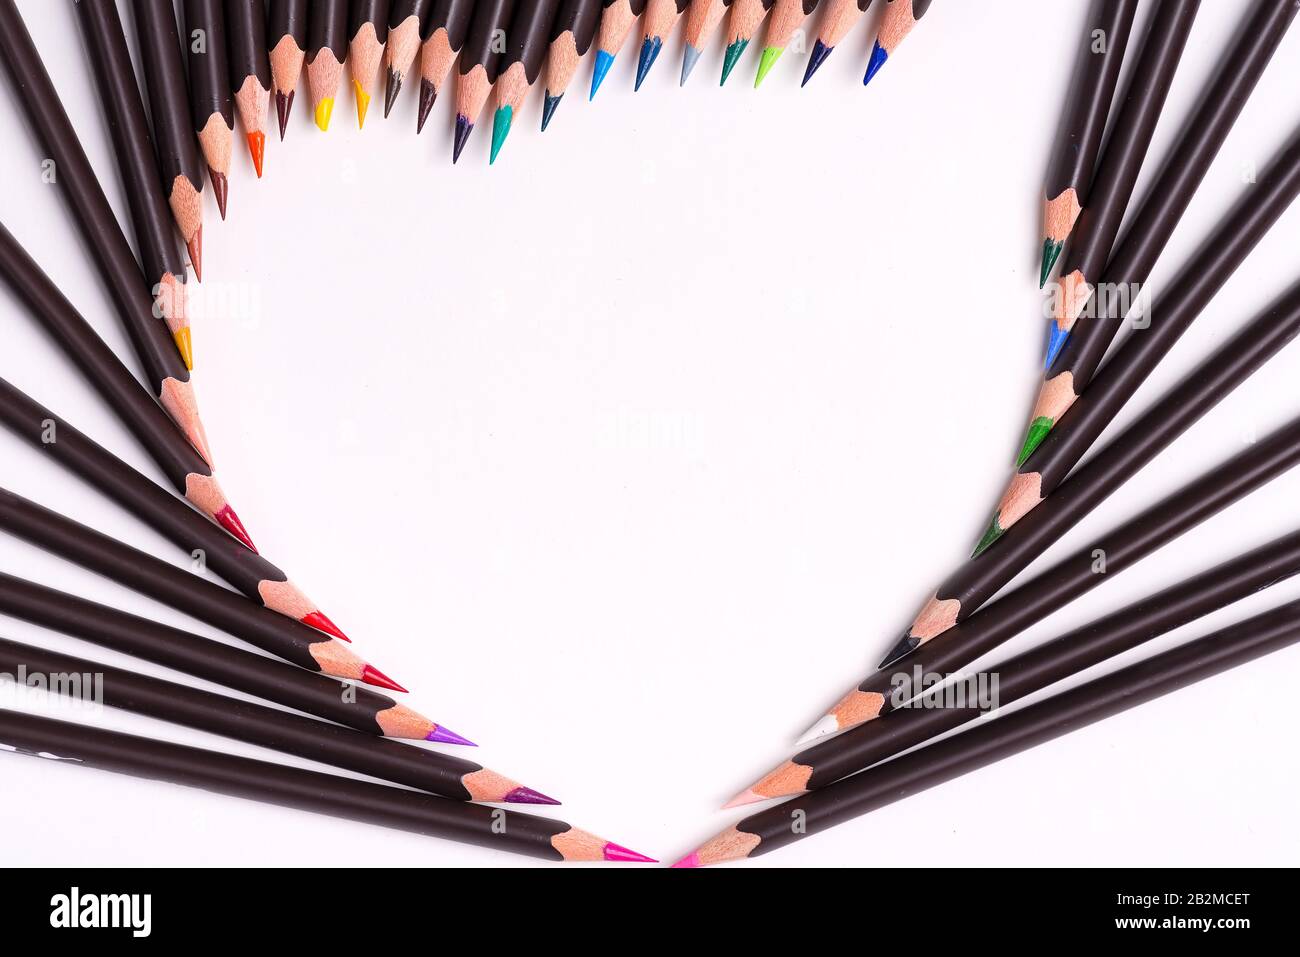 Motif de peinture à partir de crayons multicolores en forme de coeur sur un fond blanc avec espace de copie. Pose plate. Banque D'Images